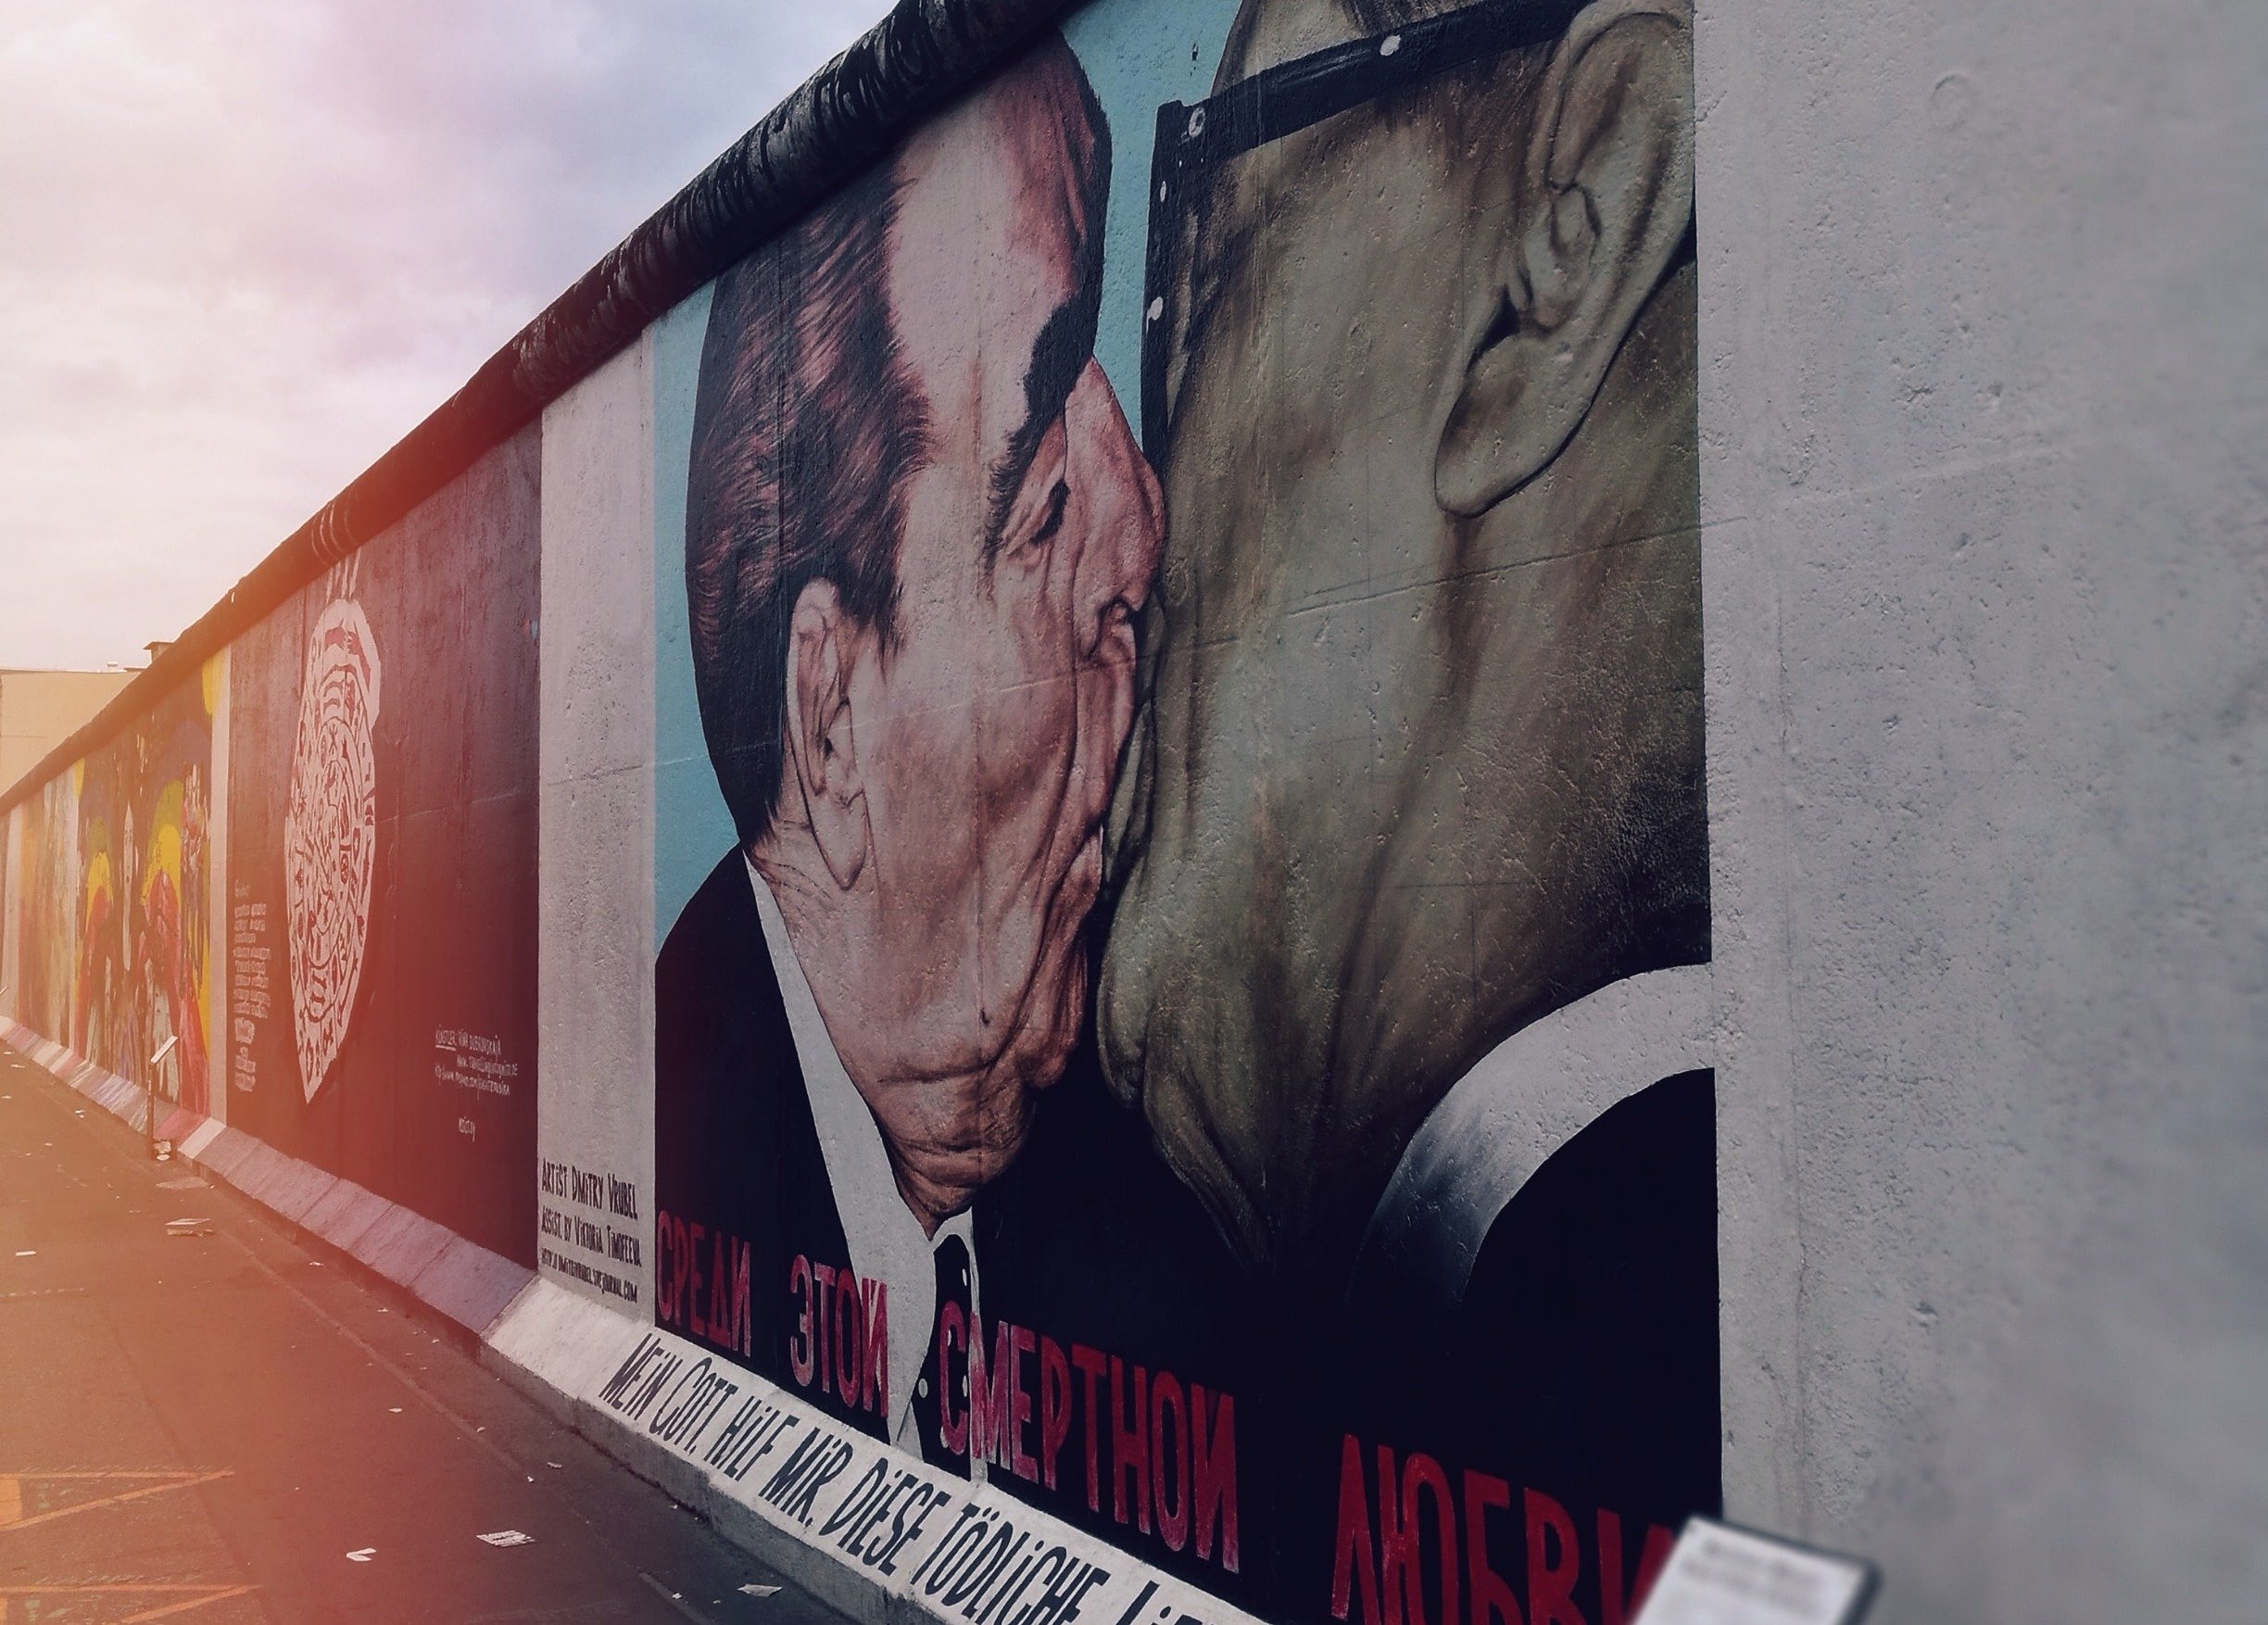 Berlin Wall, Germany.